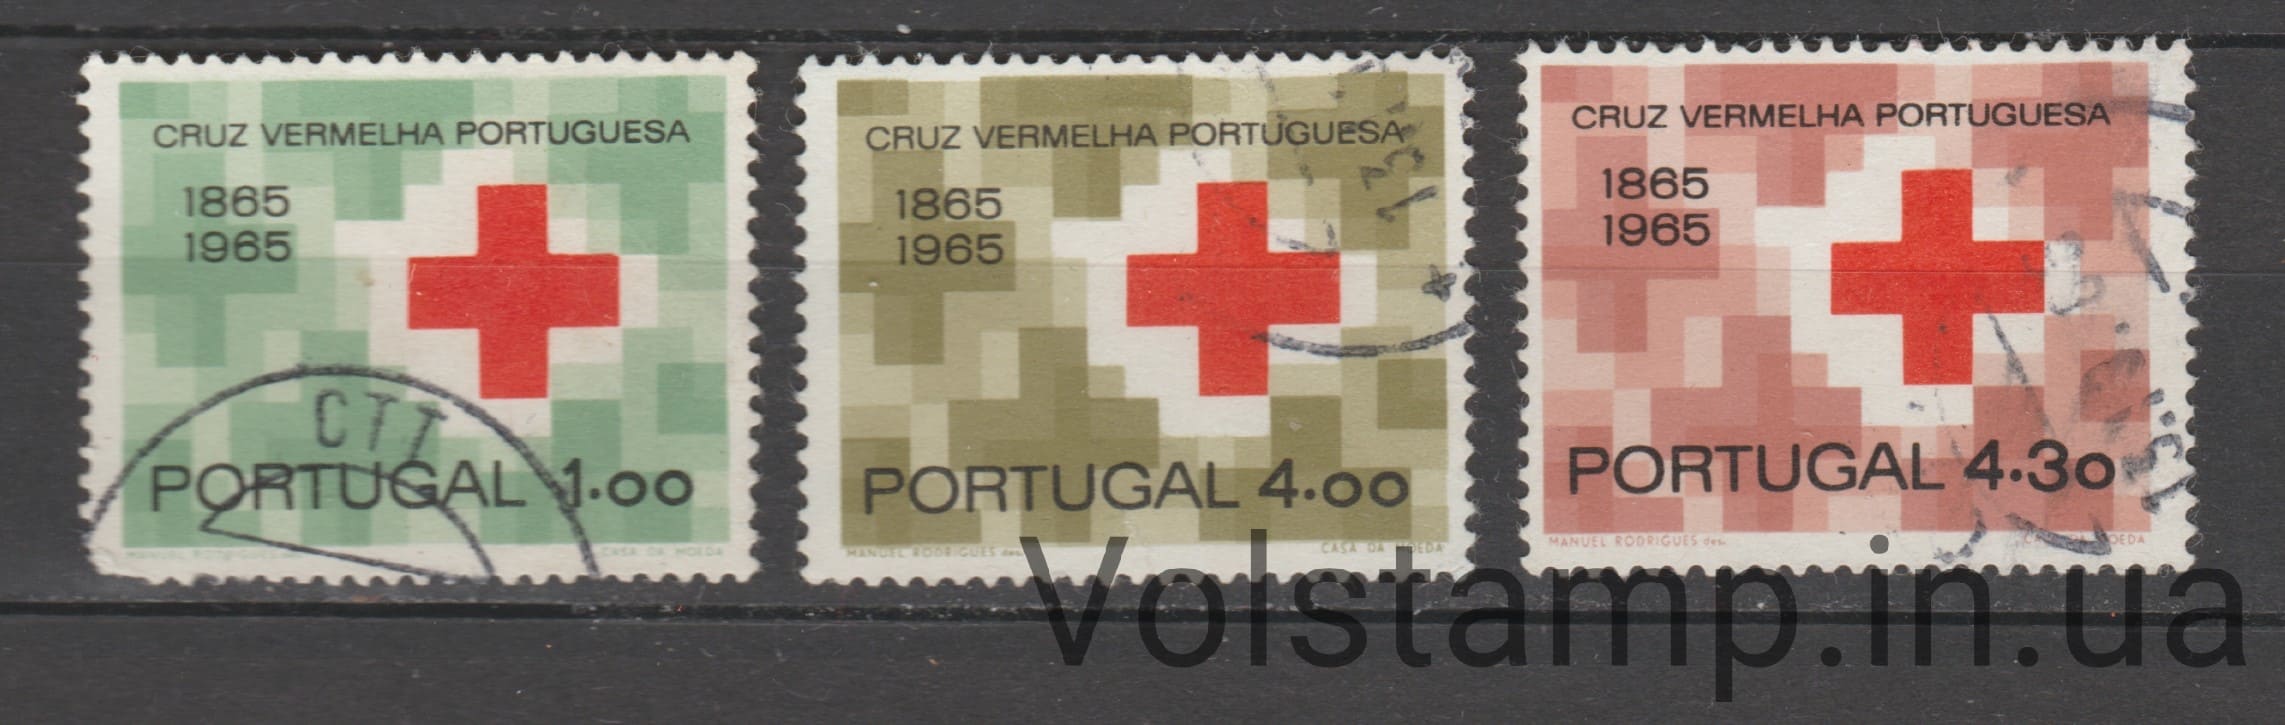 1965 Португалия Серия марок (Португальский Красный Крест, столетие) Гашеные №987-989